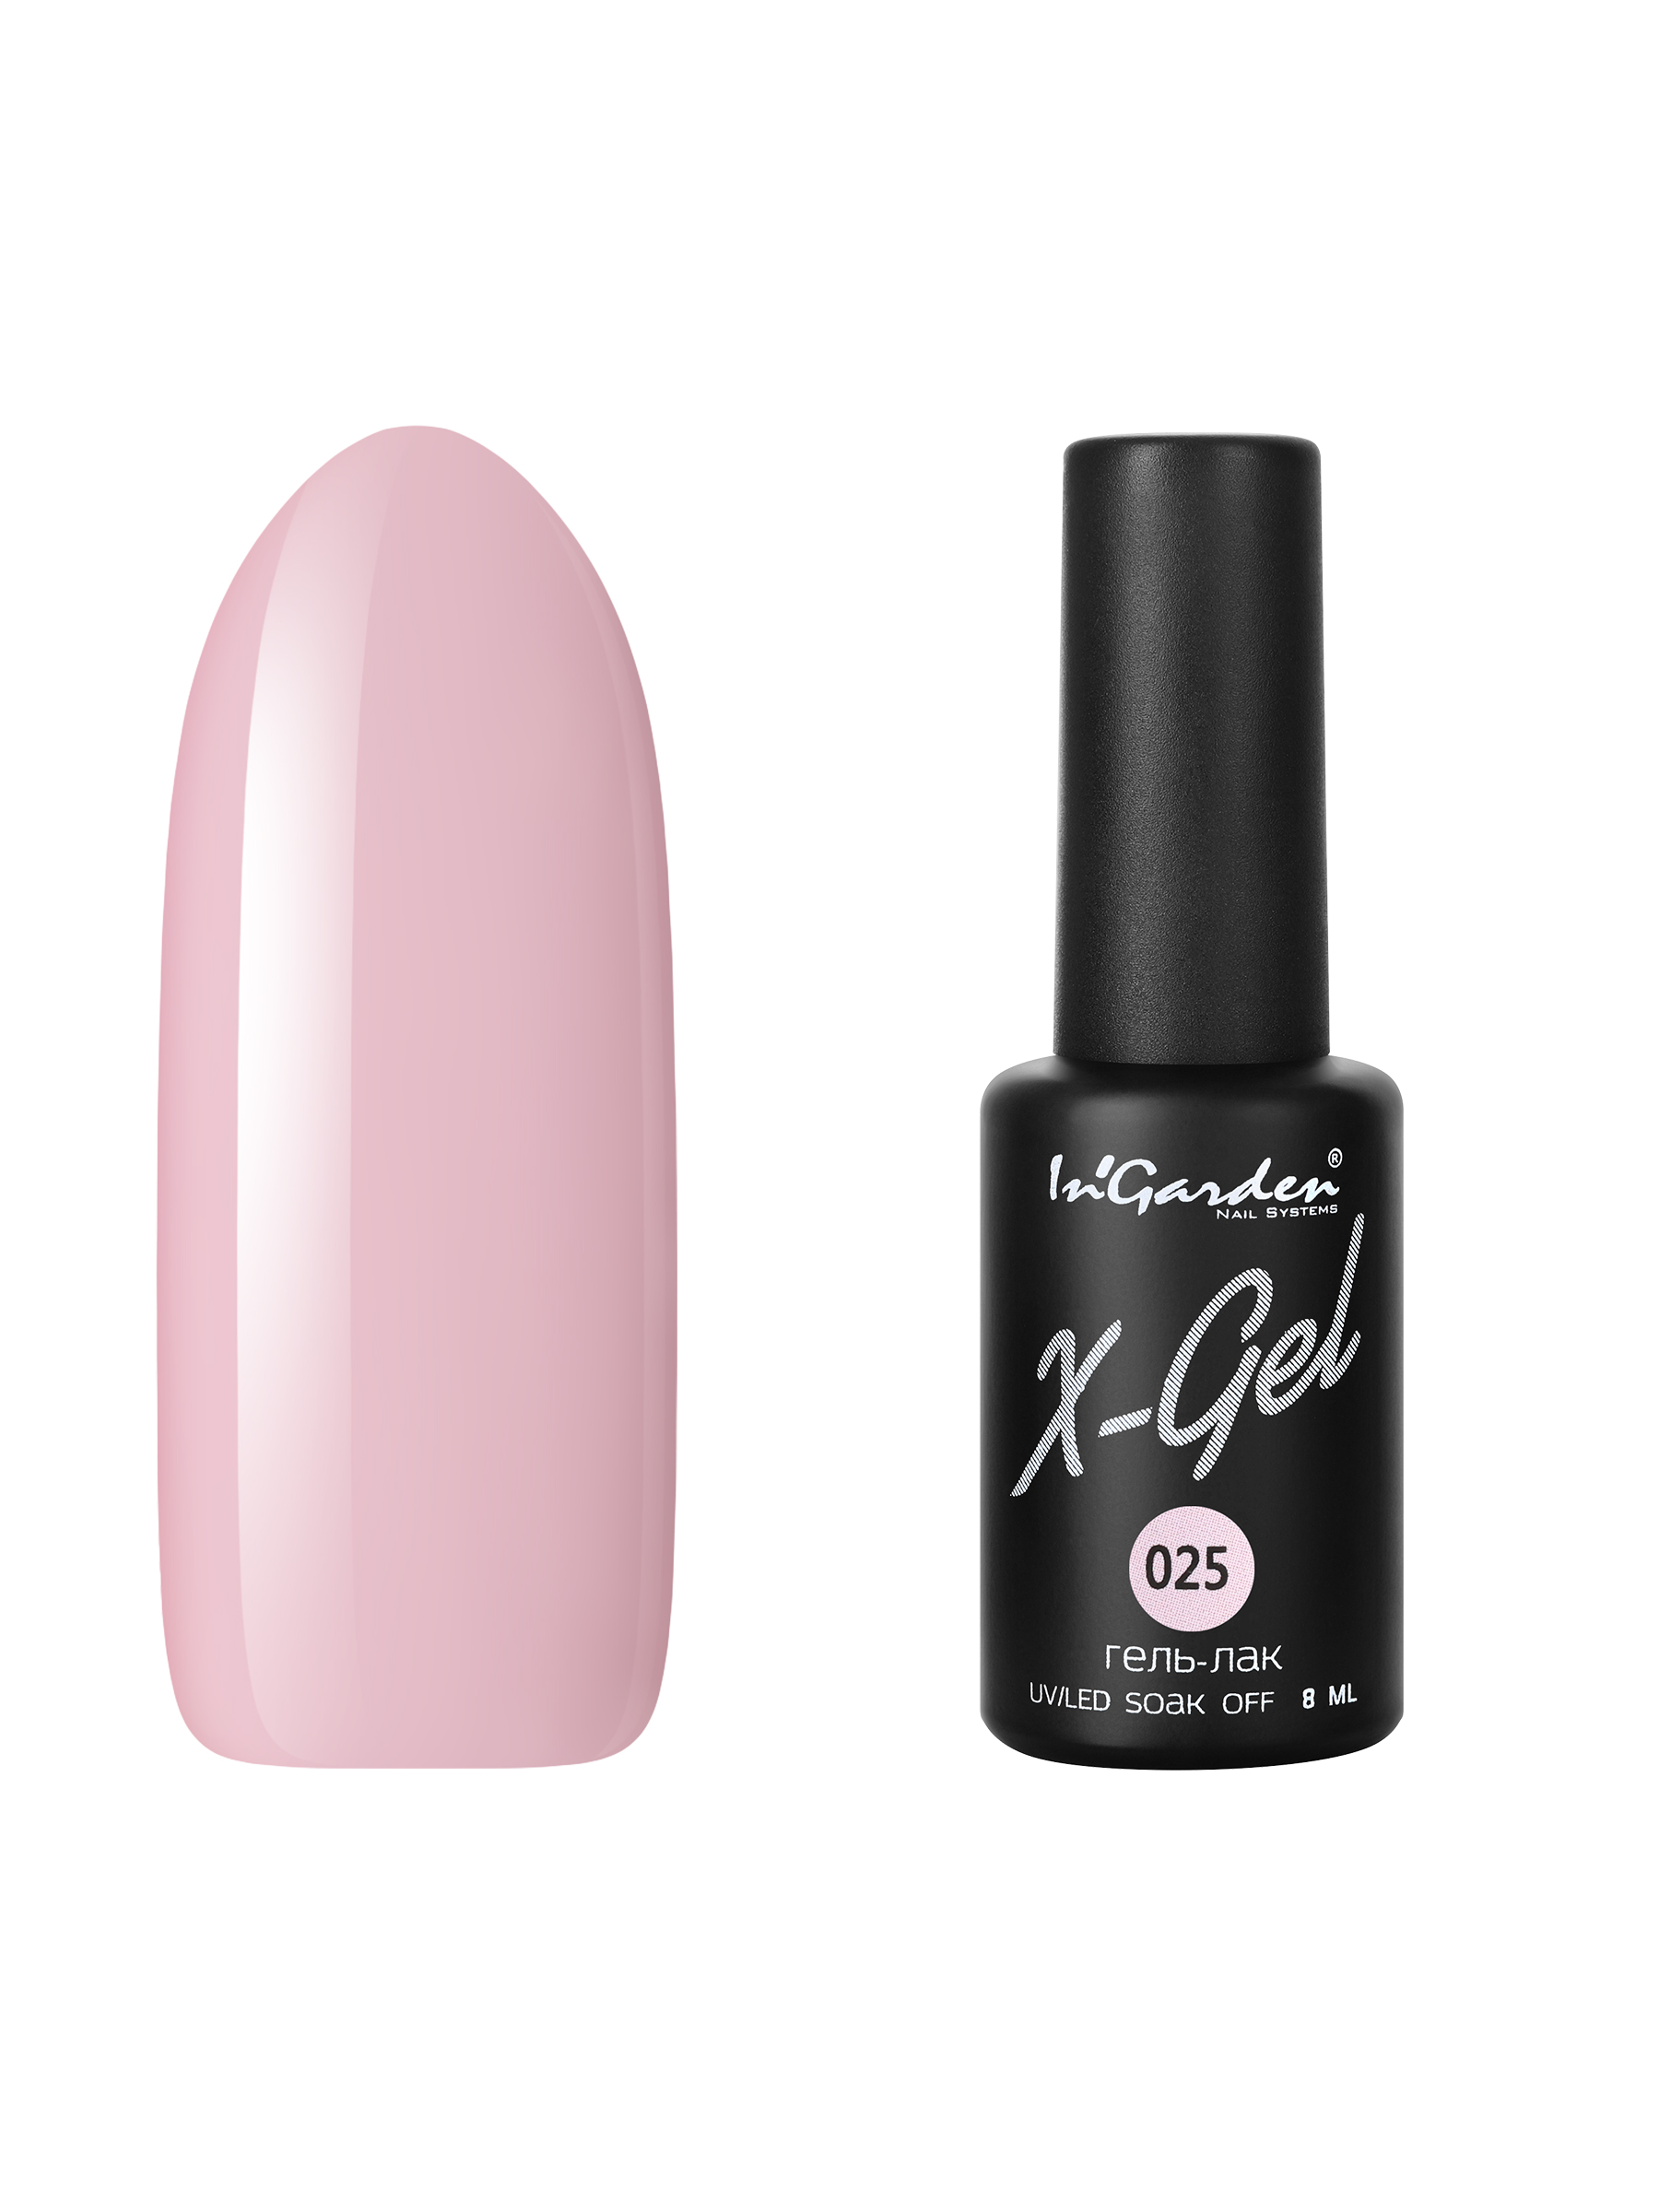 Купить Гель лак для ногтей In’Garden X-Gel N° 25 бледно-розовый плотный 8 мл, In'Garden